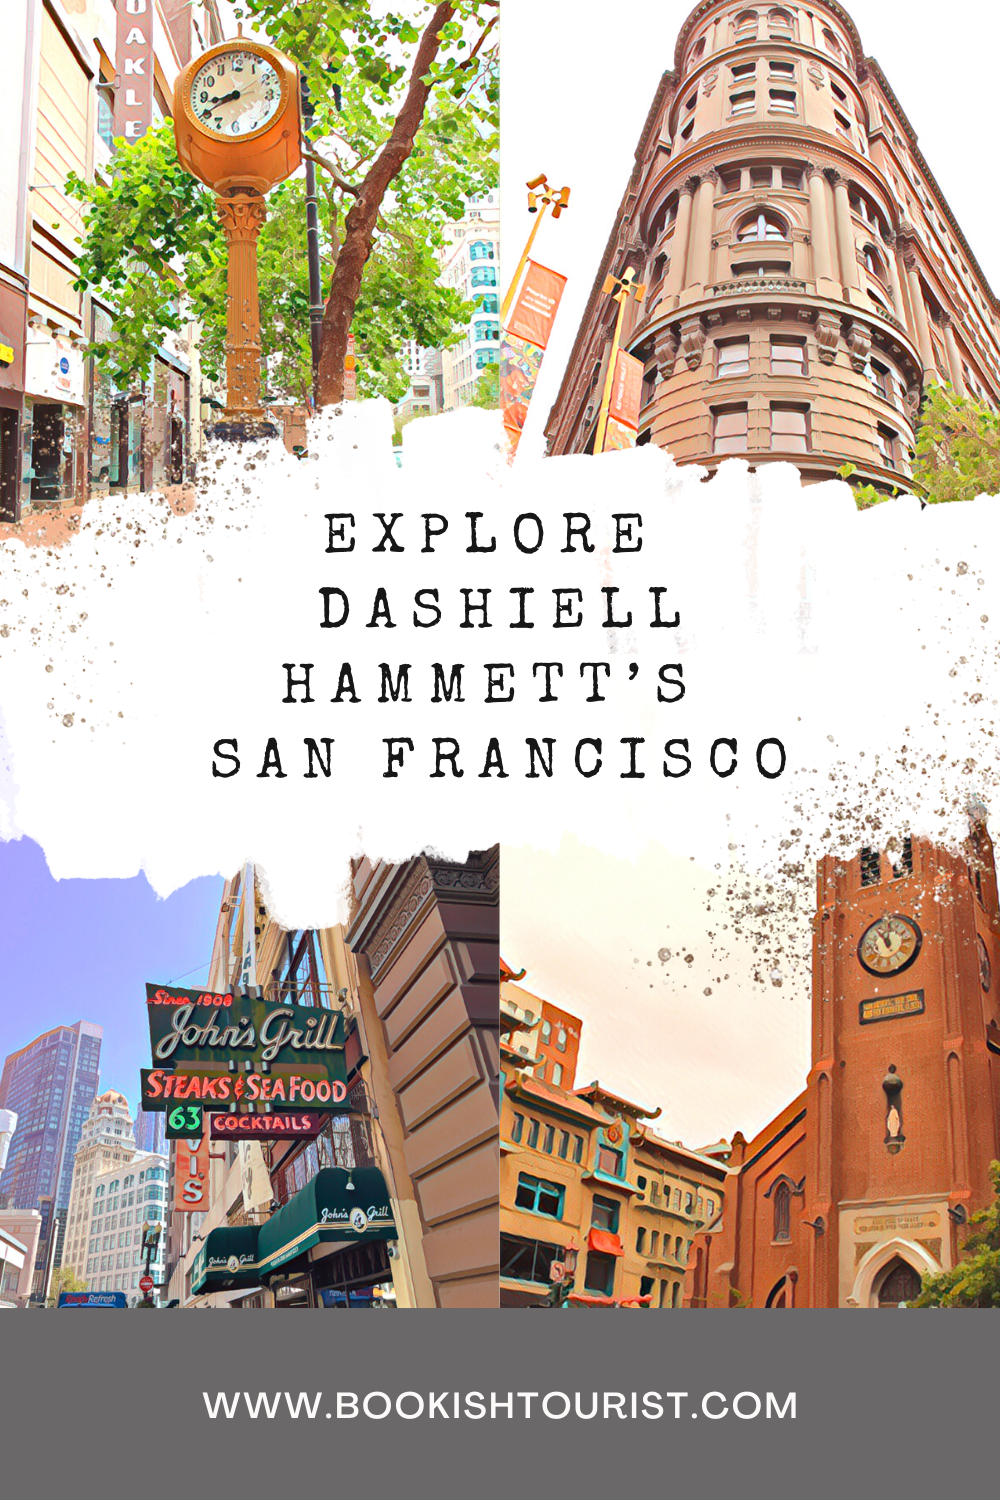 Dashiell Hammett's San Francisco